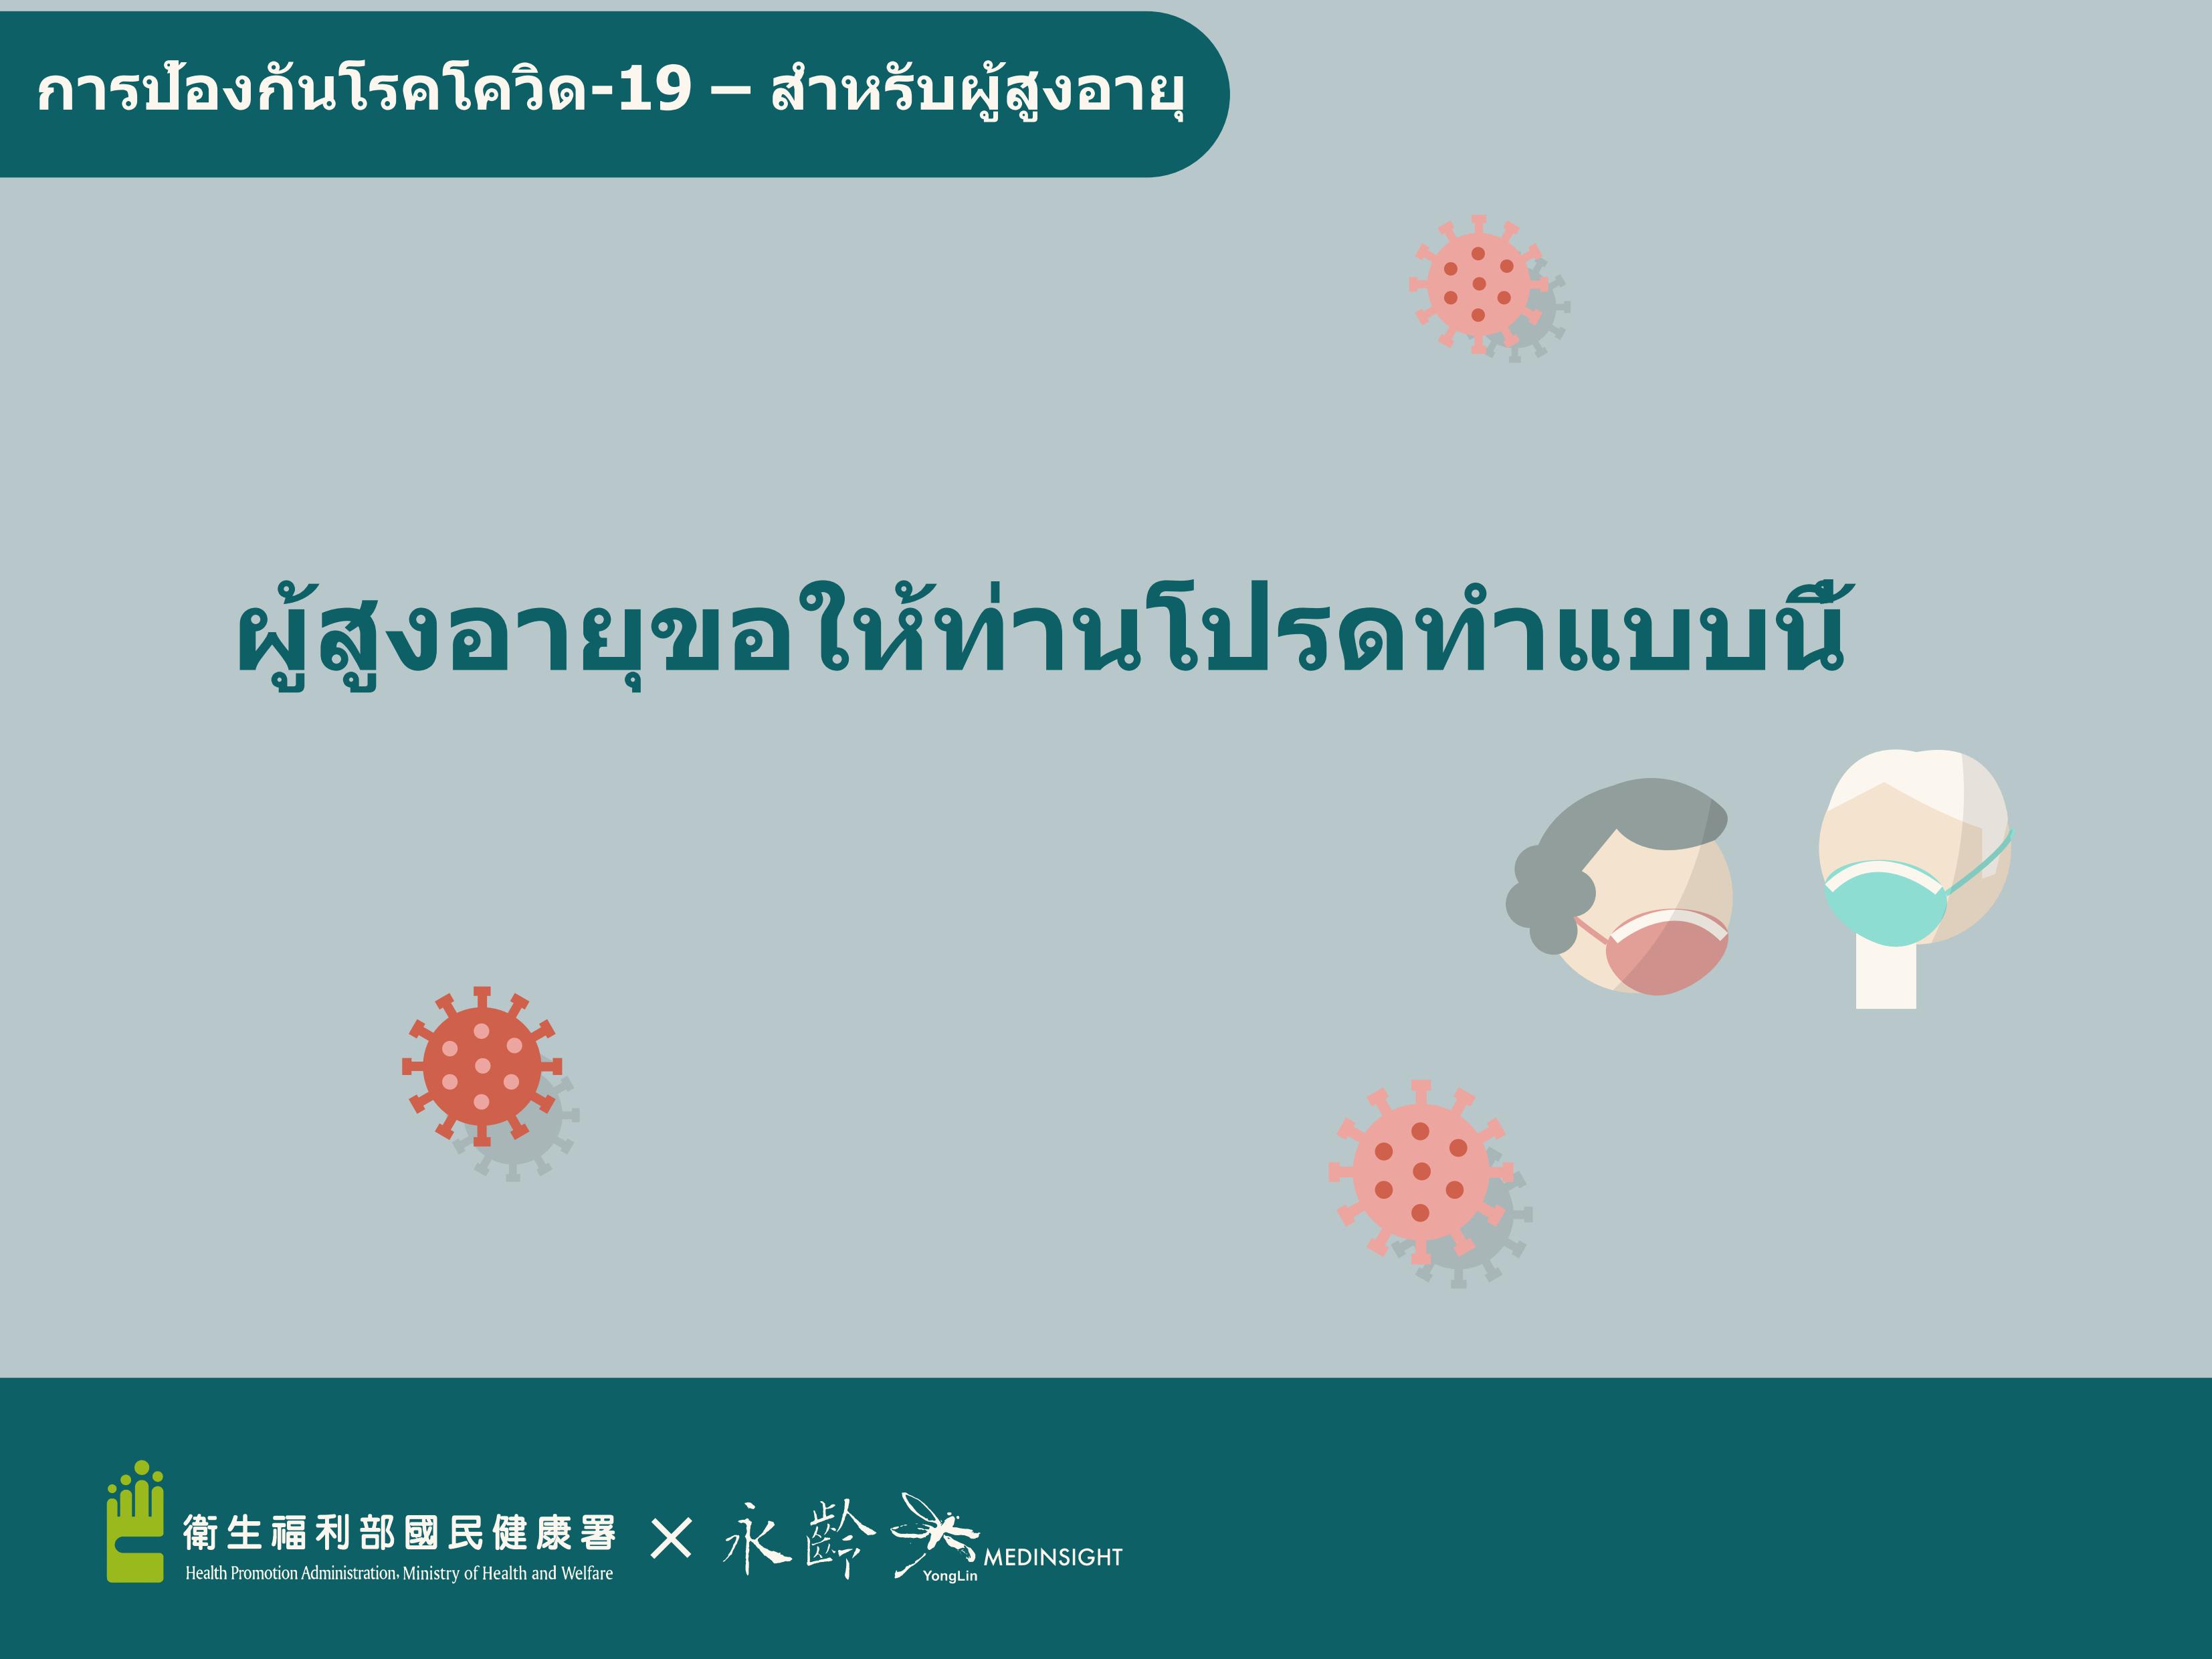 Prevention of COVID-19 - Seniors (Thai)文章照片